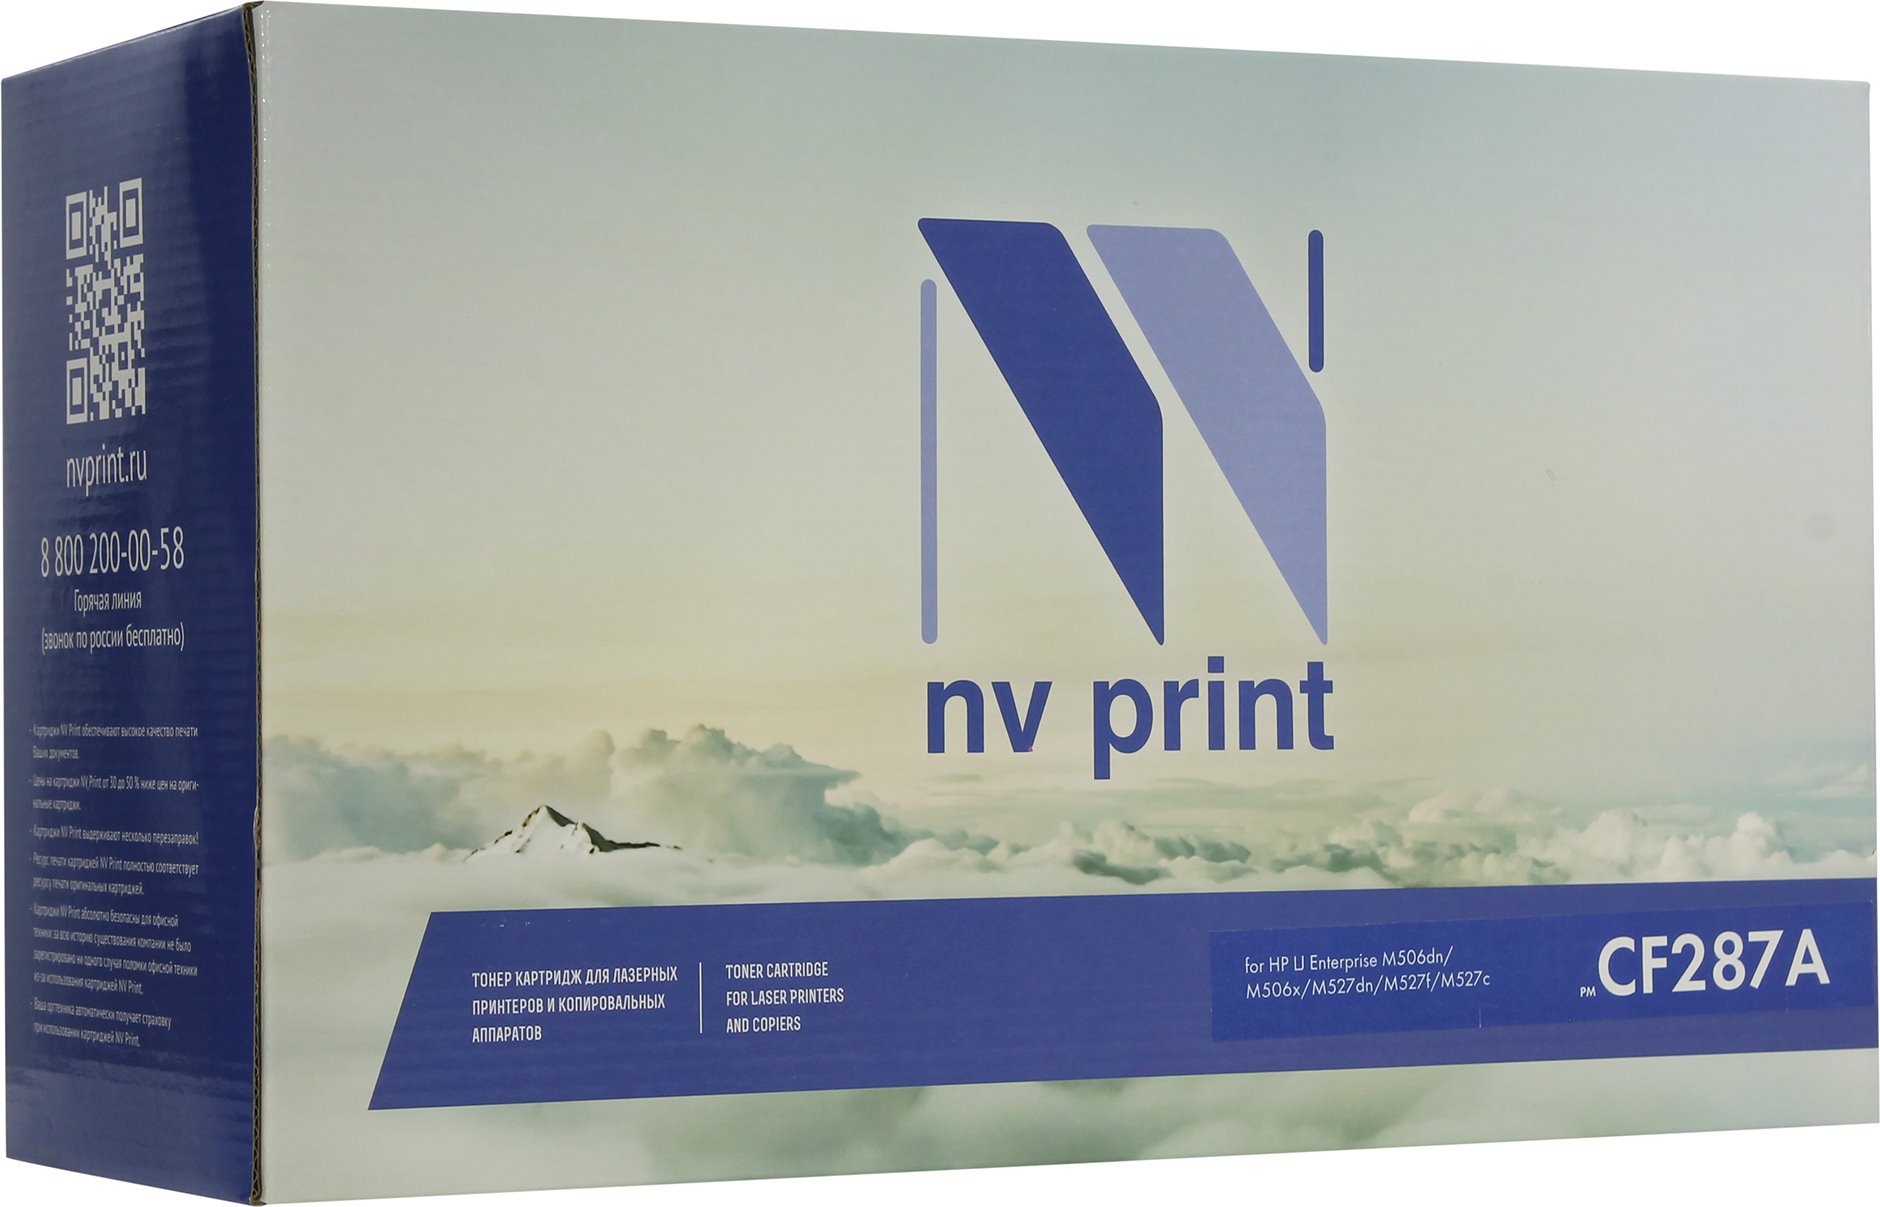   NV-Print  HP Enterprise M506, M527, CF287A